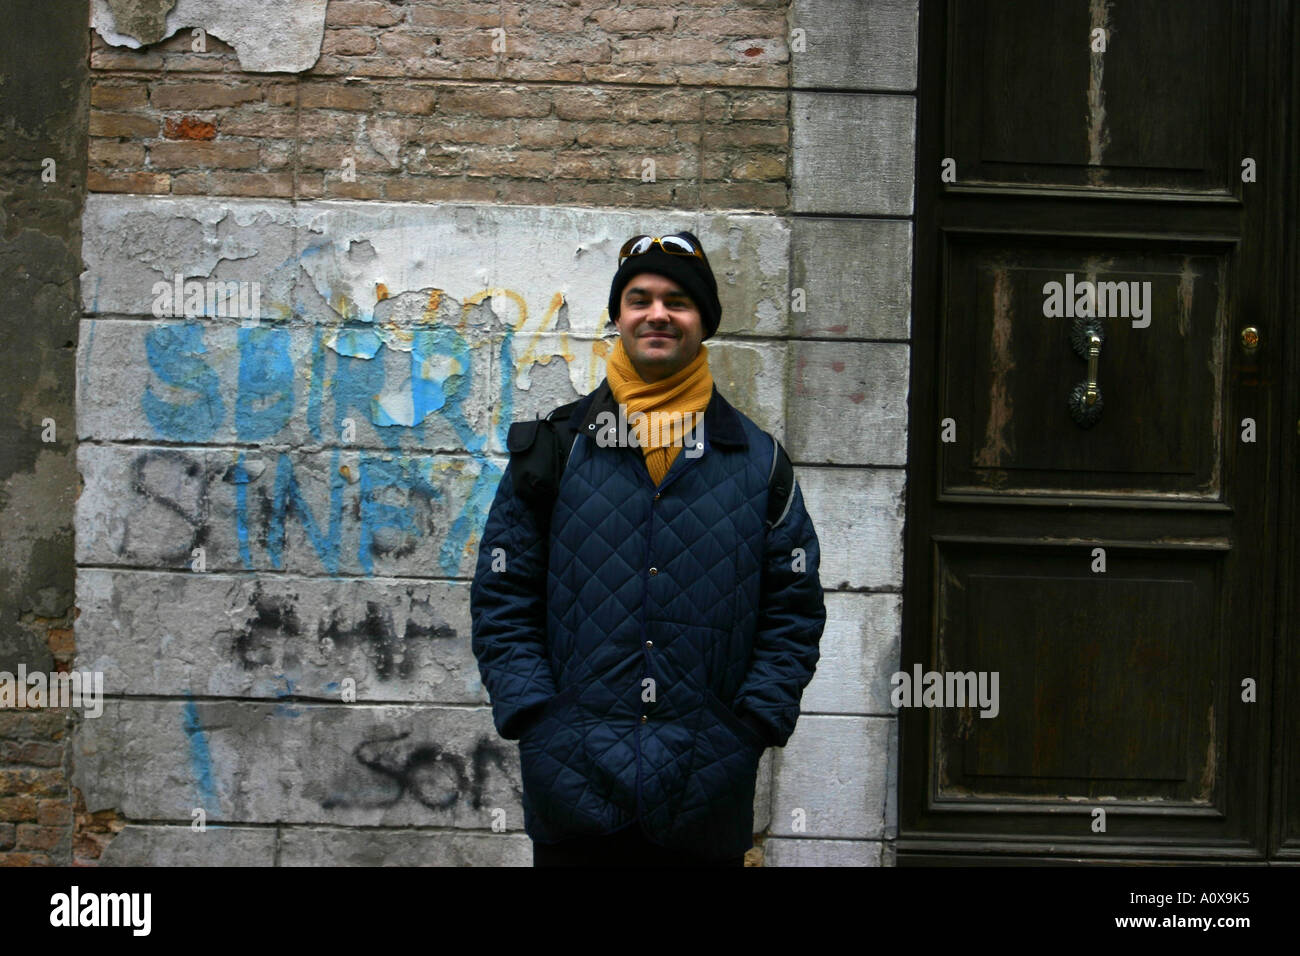 L'homme d'origine italienne, debout devant un mur de graffitis à Venise Italie Banque D'Images